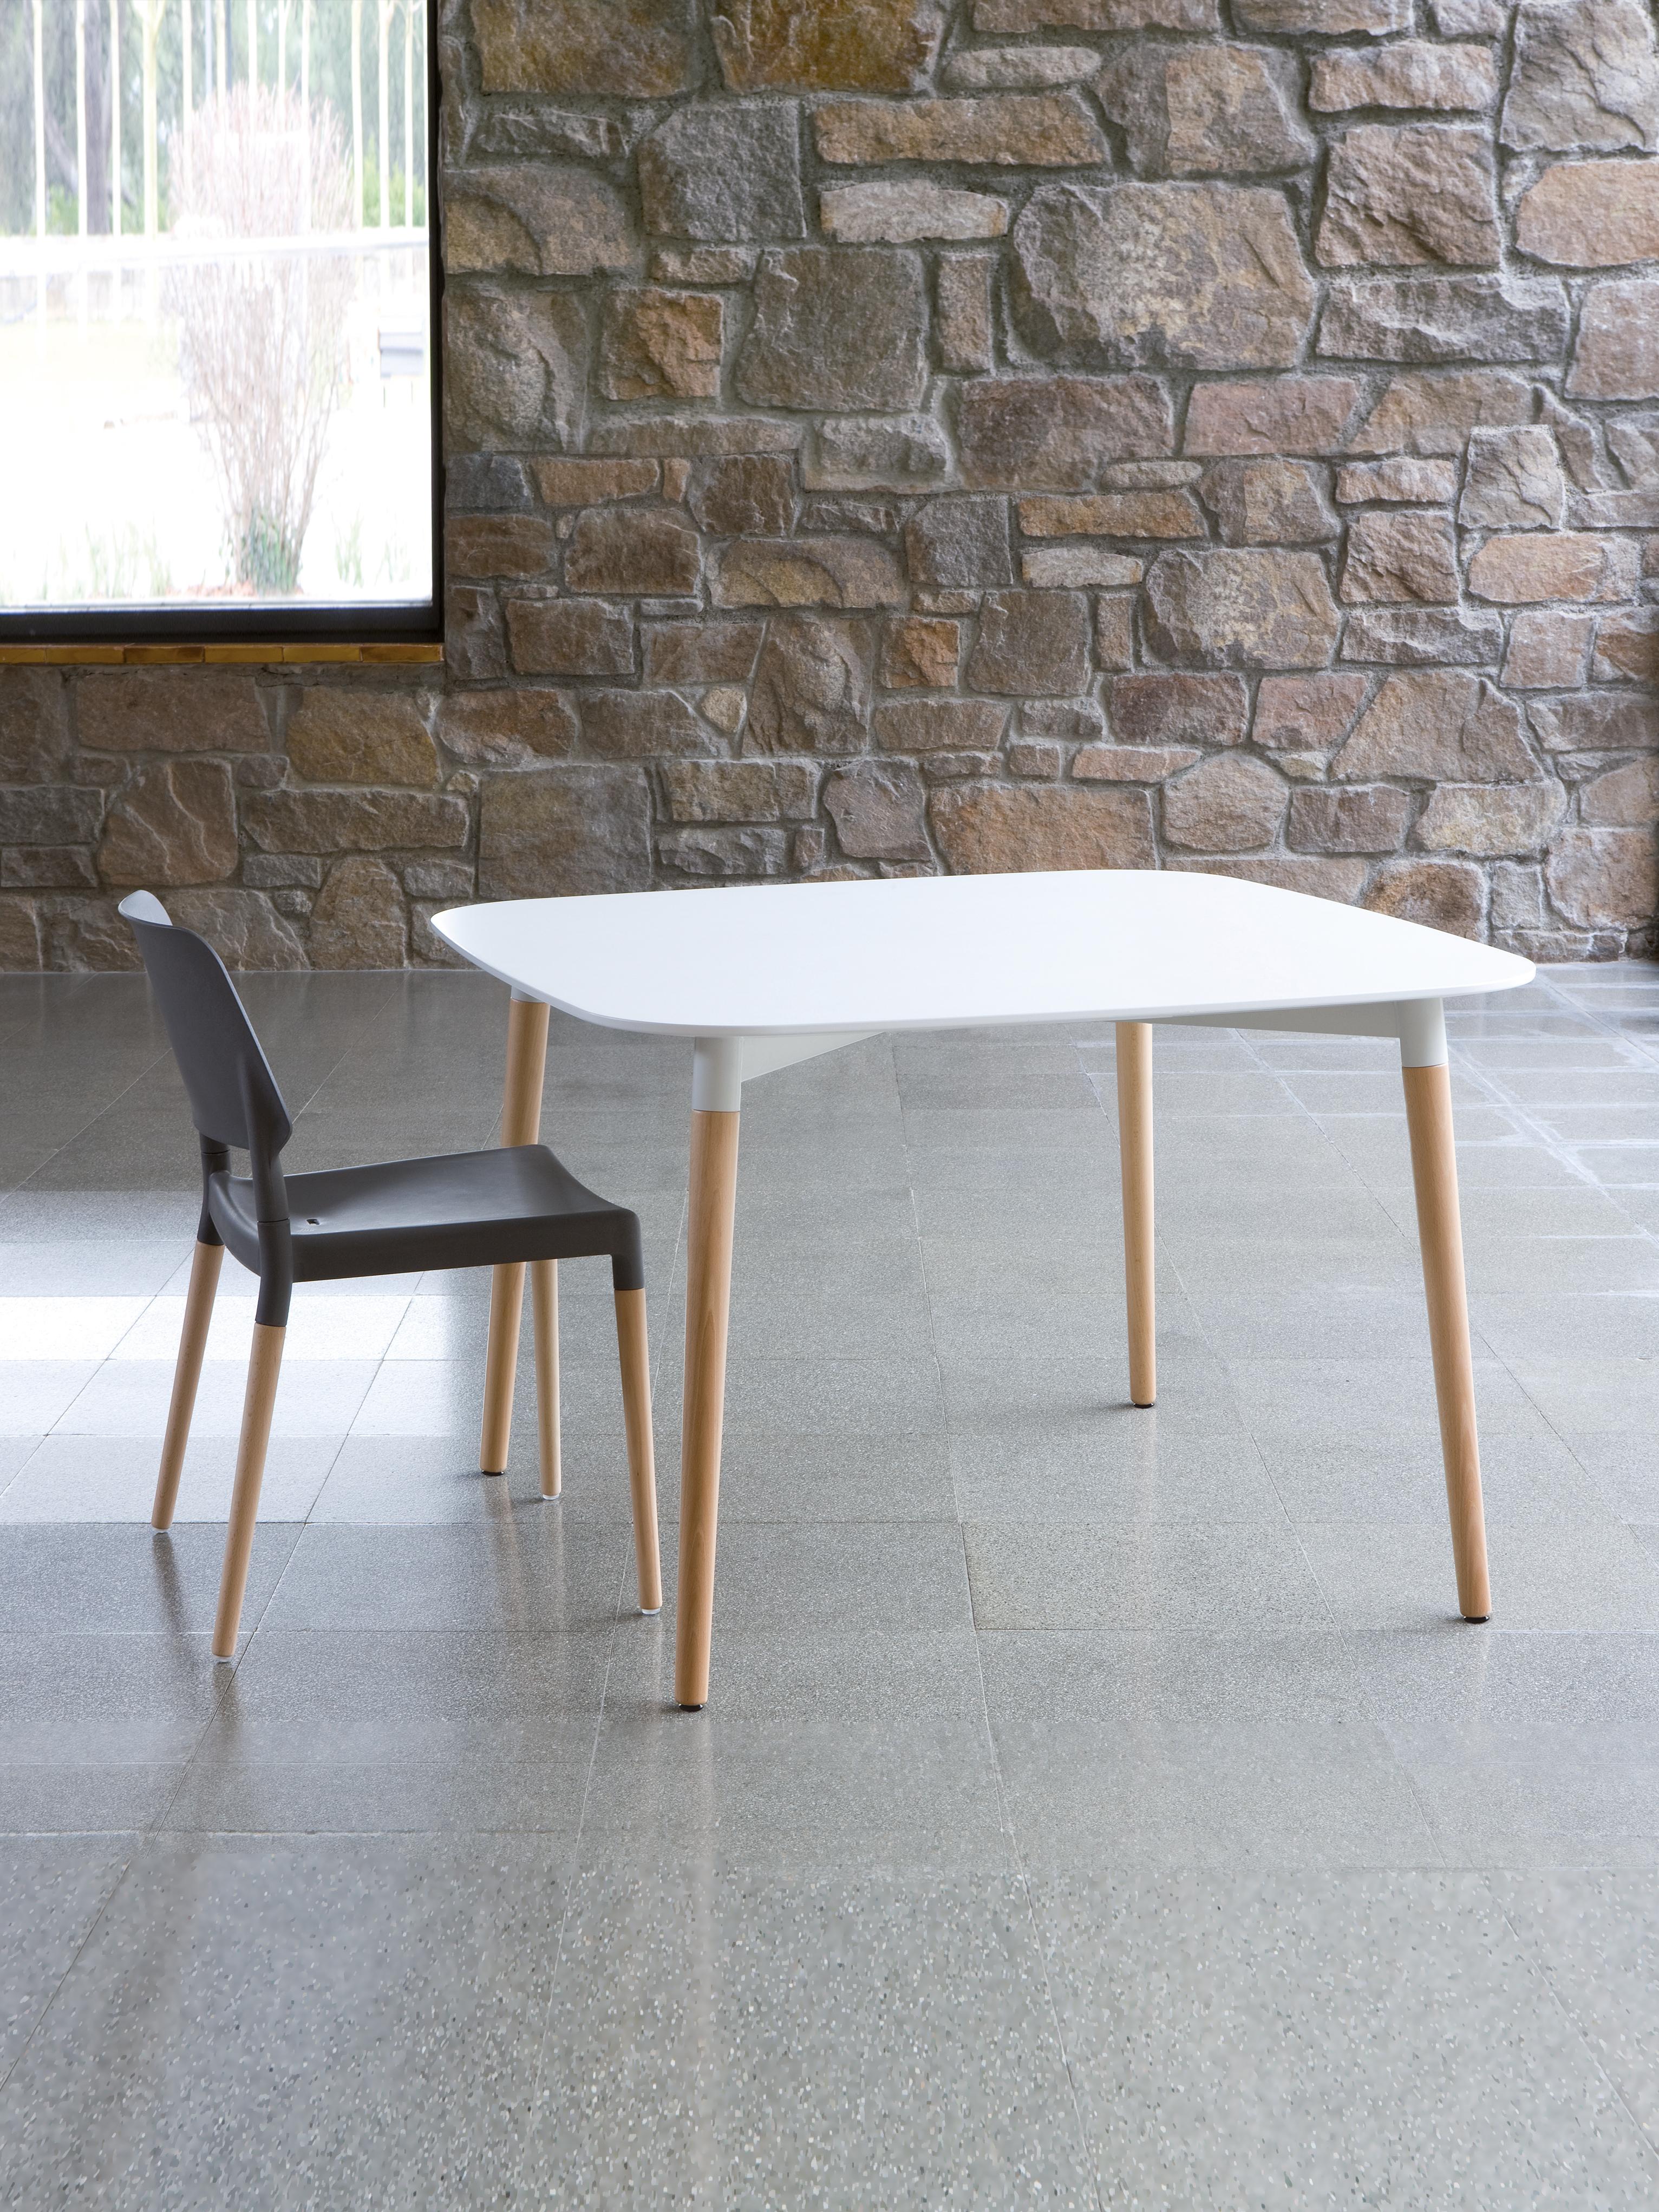 Belloch Cuadrada tisch von Lagranja Design
Abmessungen: T 110 x B 110 x H 73 cm
MATERIALIEN: Metall, Buchenholz.
Erhältlich in 2 Größen: D110 x B 110, D110x B180 cm.

Belloch ist ein großer, komfortabler Tisch mit einer Laminatplatte mit